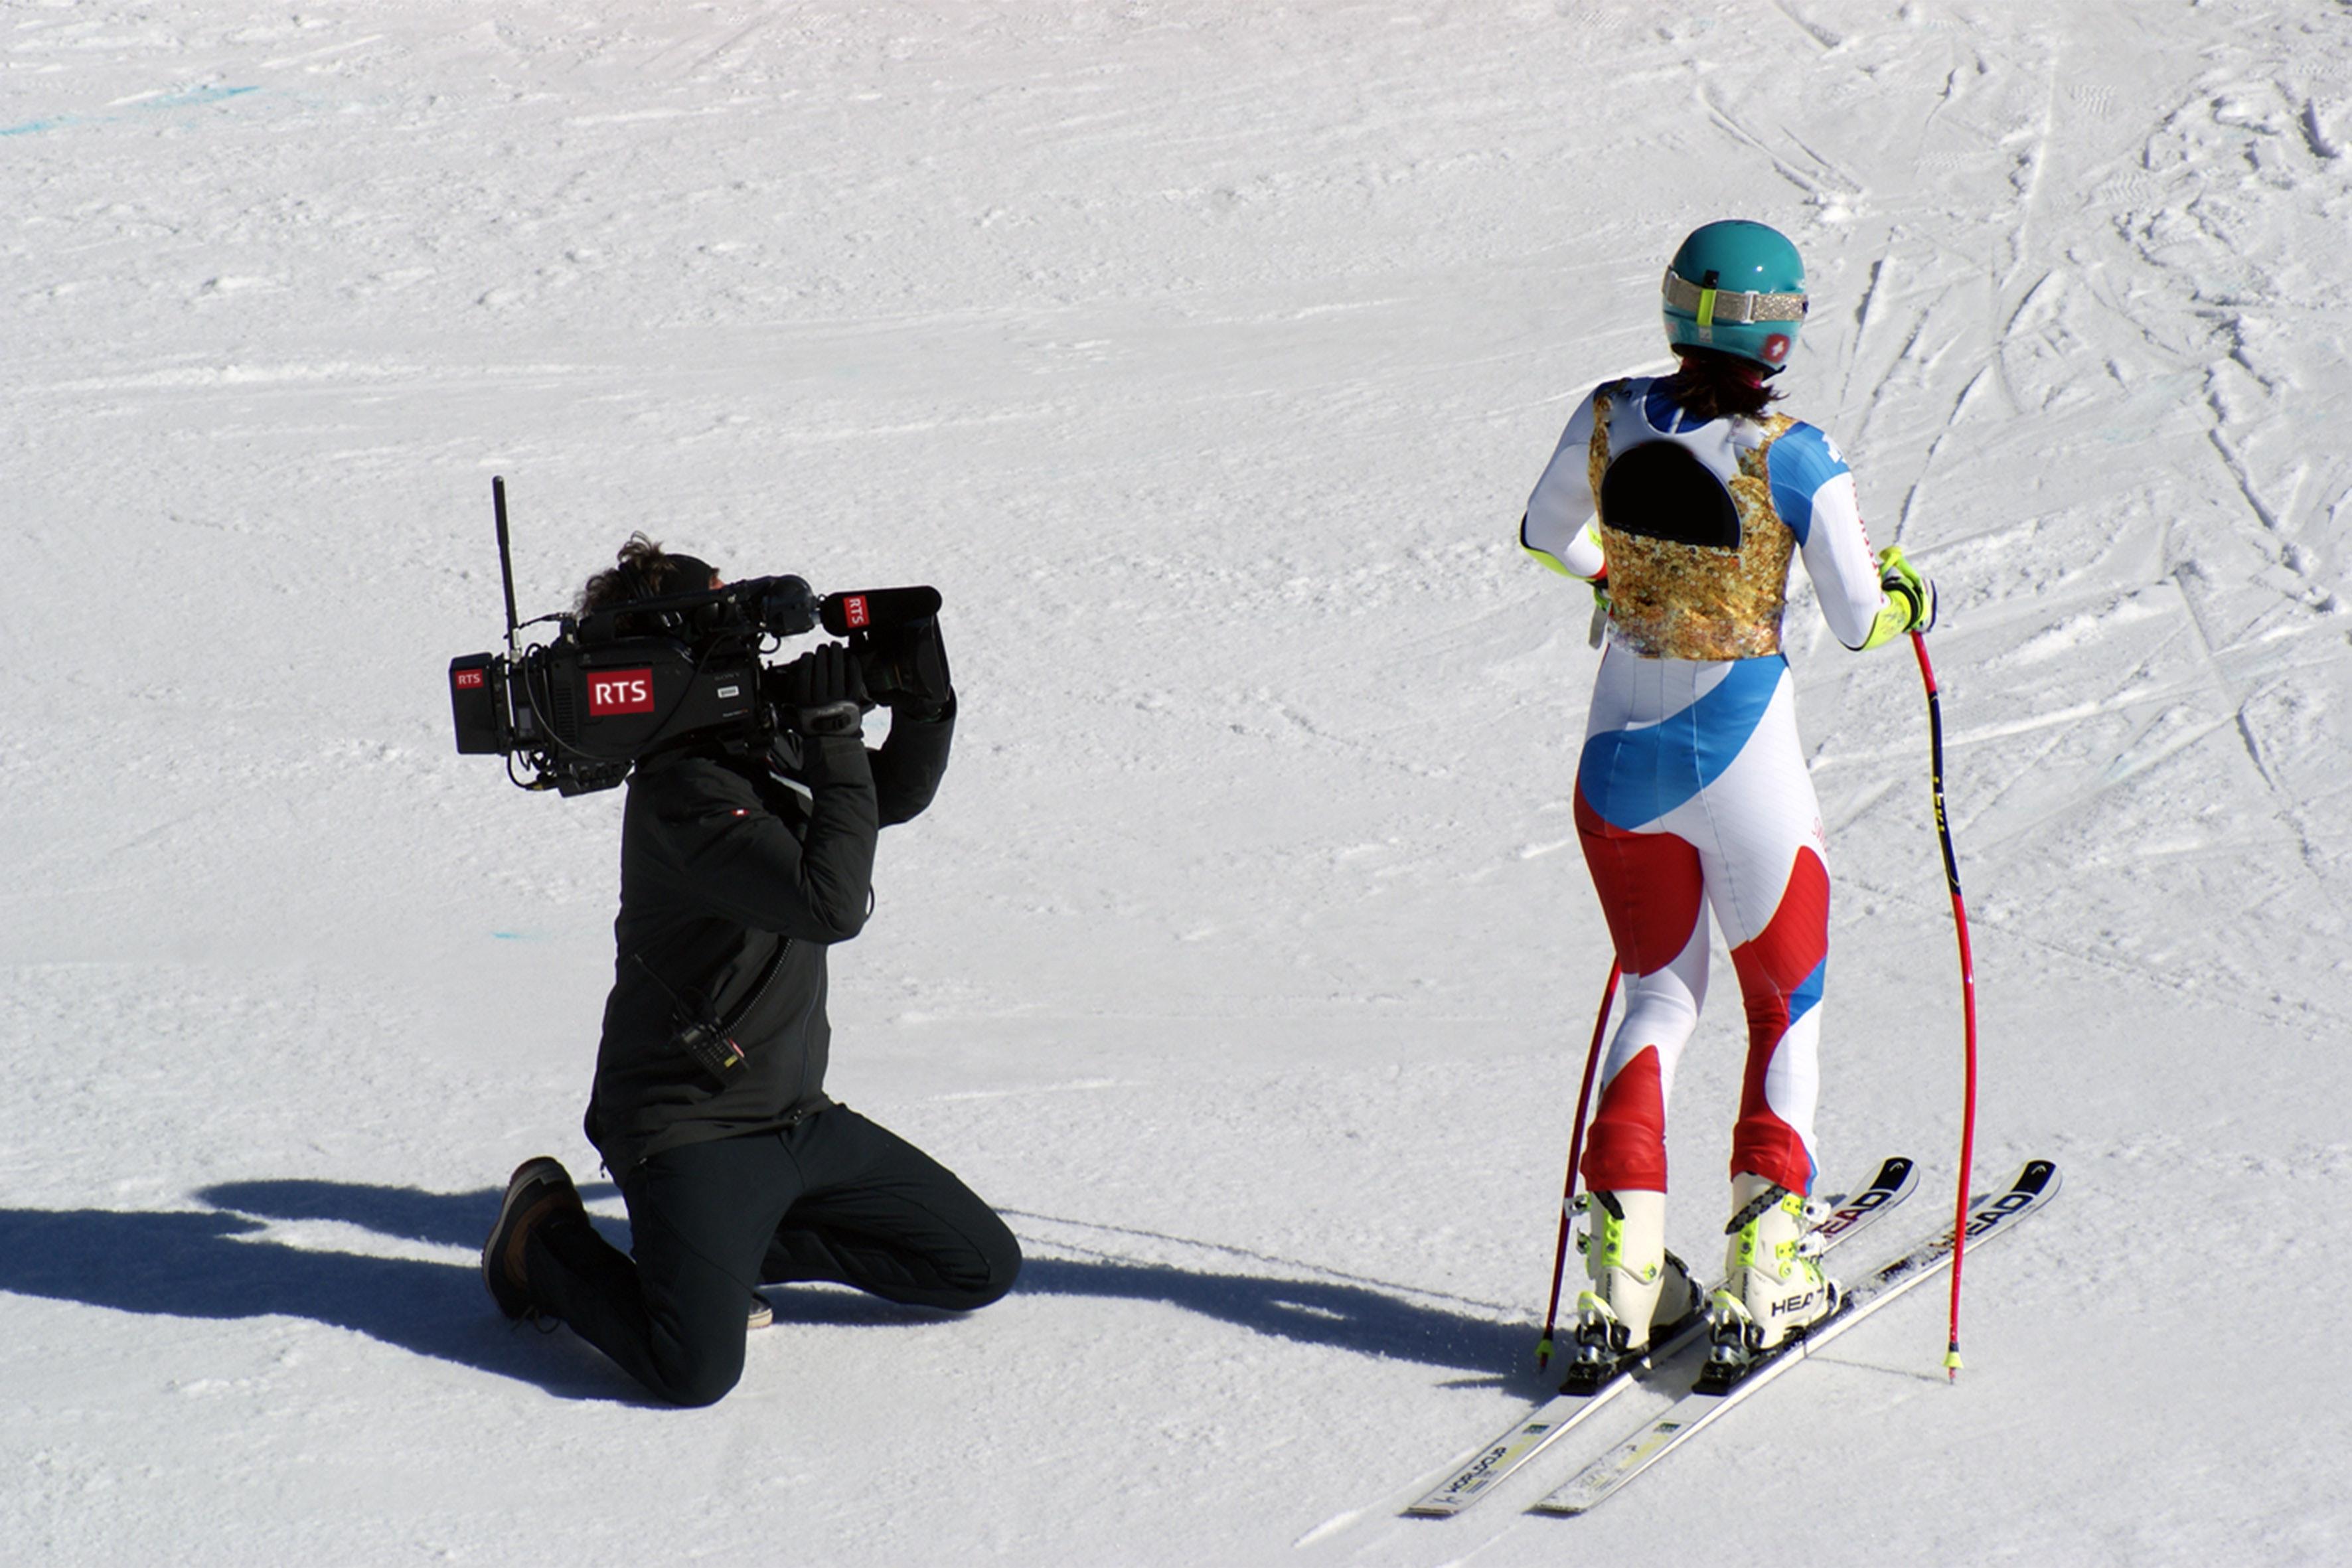 Réaliser les images des compétitions de ski alpin - Crans-Montana [RTS 2020 - DR]